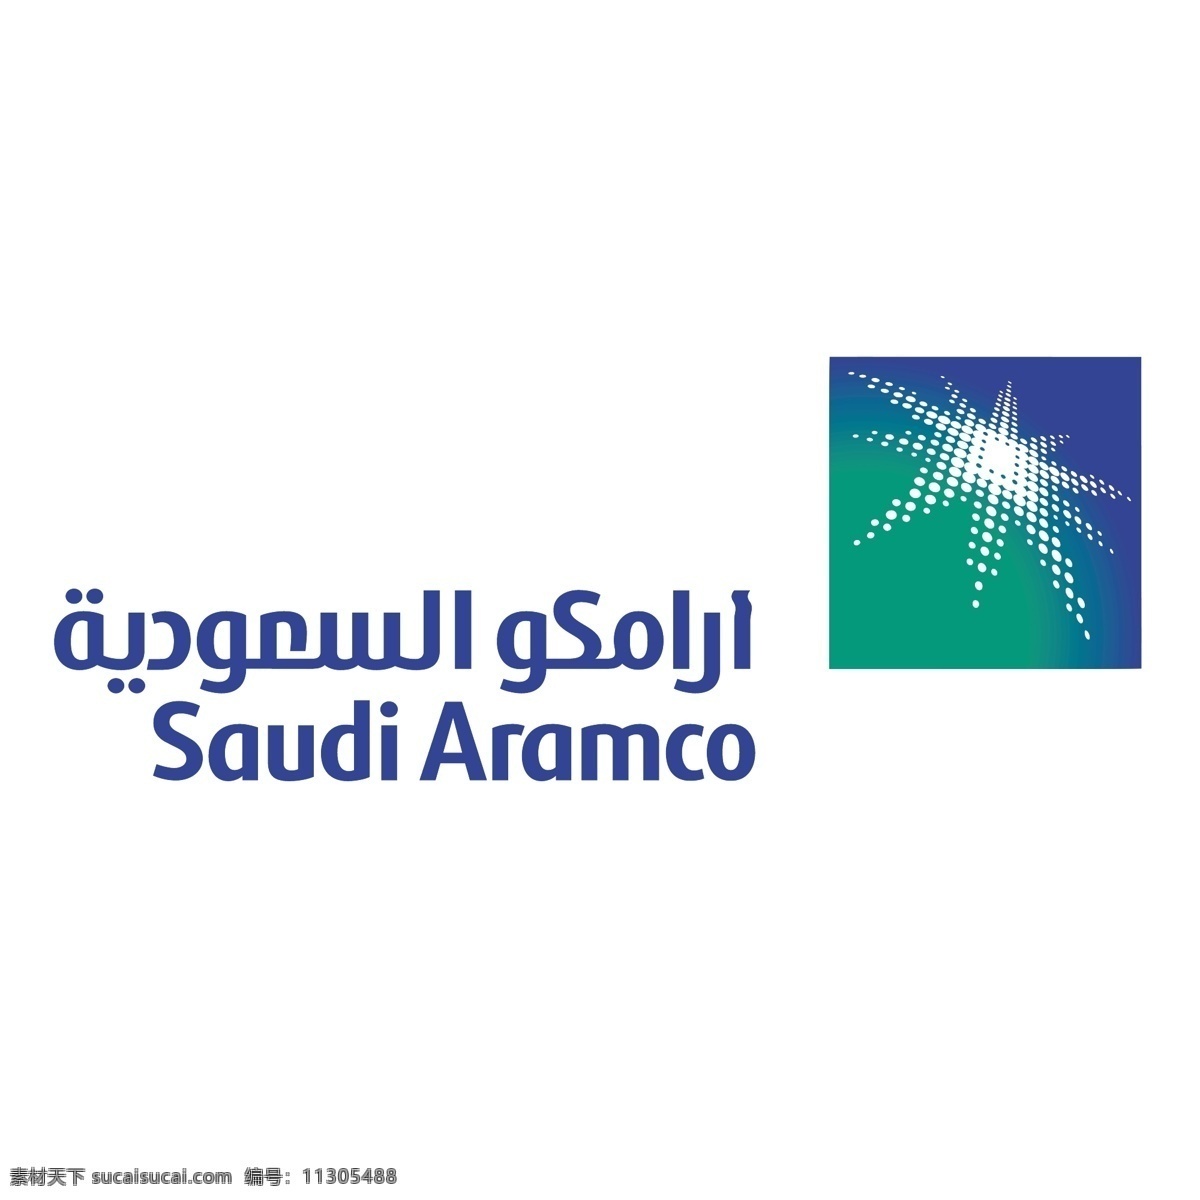 自由 沙特 沙特石油公司 石油公司 矢量 图形 矢量图 沙特的载体 办公室沙特 矢量eps eps沙特 沙特阿拉伯 标志 标志艺术 logo 标志的沙特 建筑家居